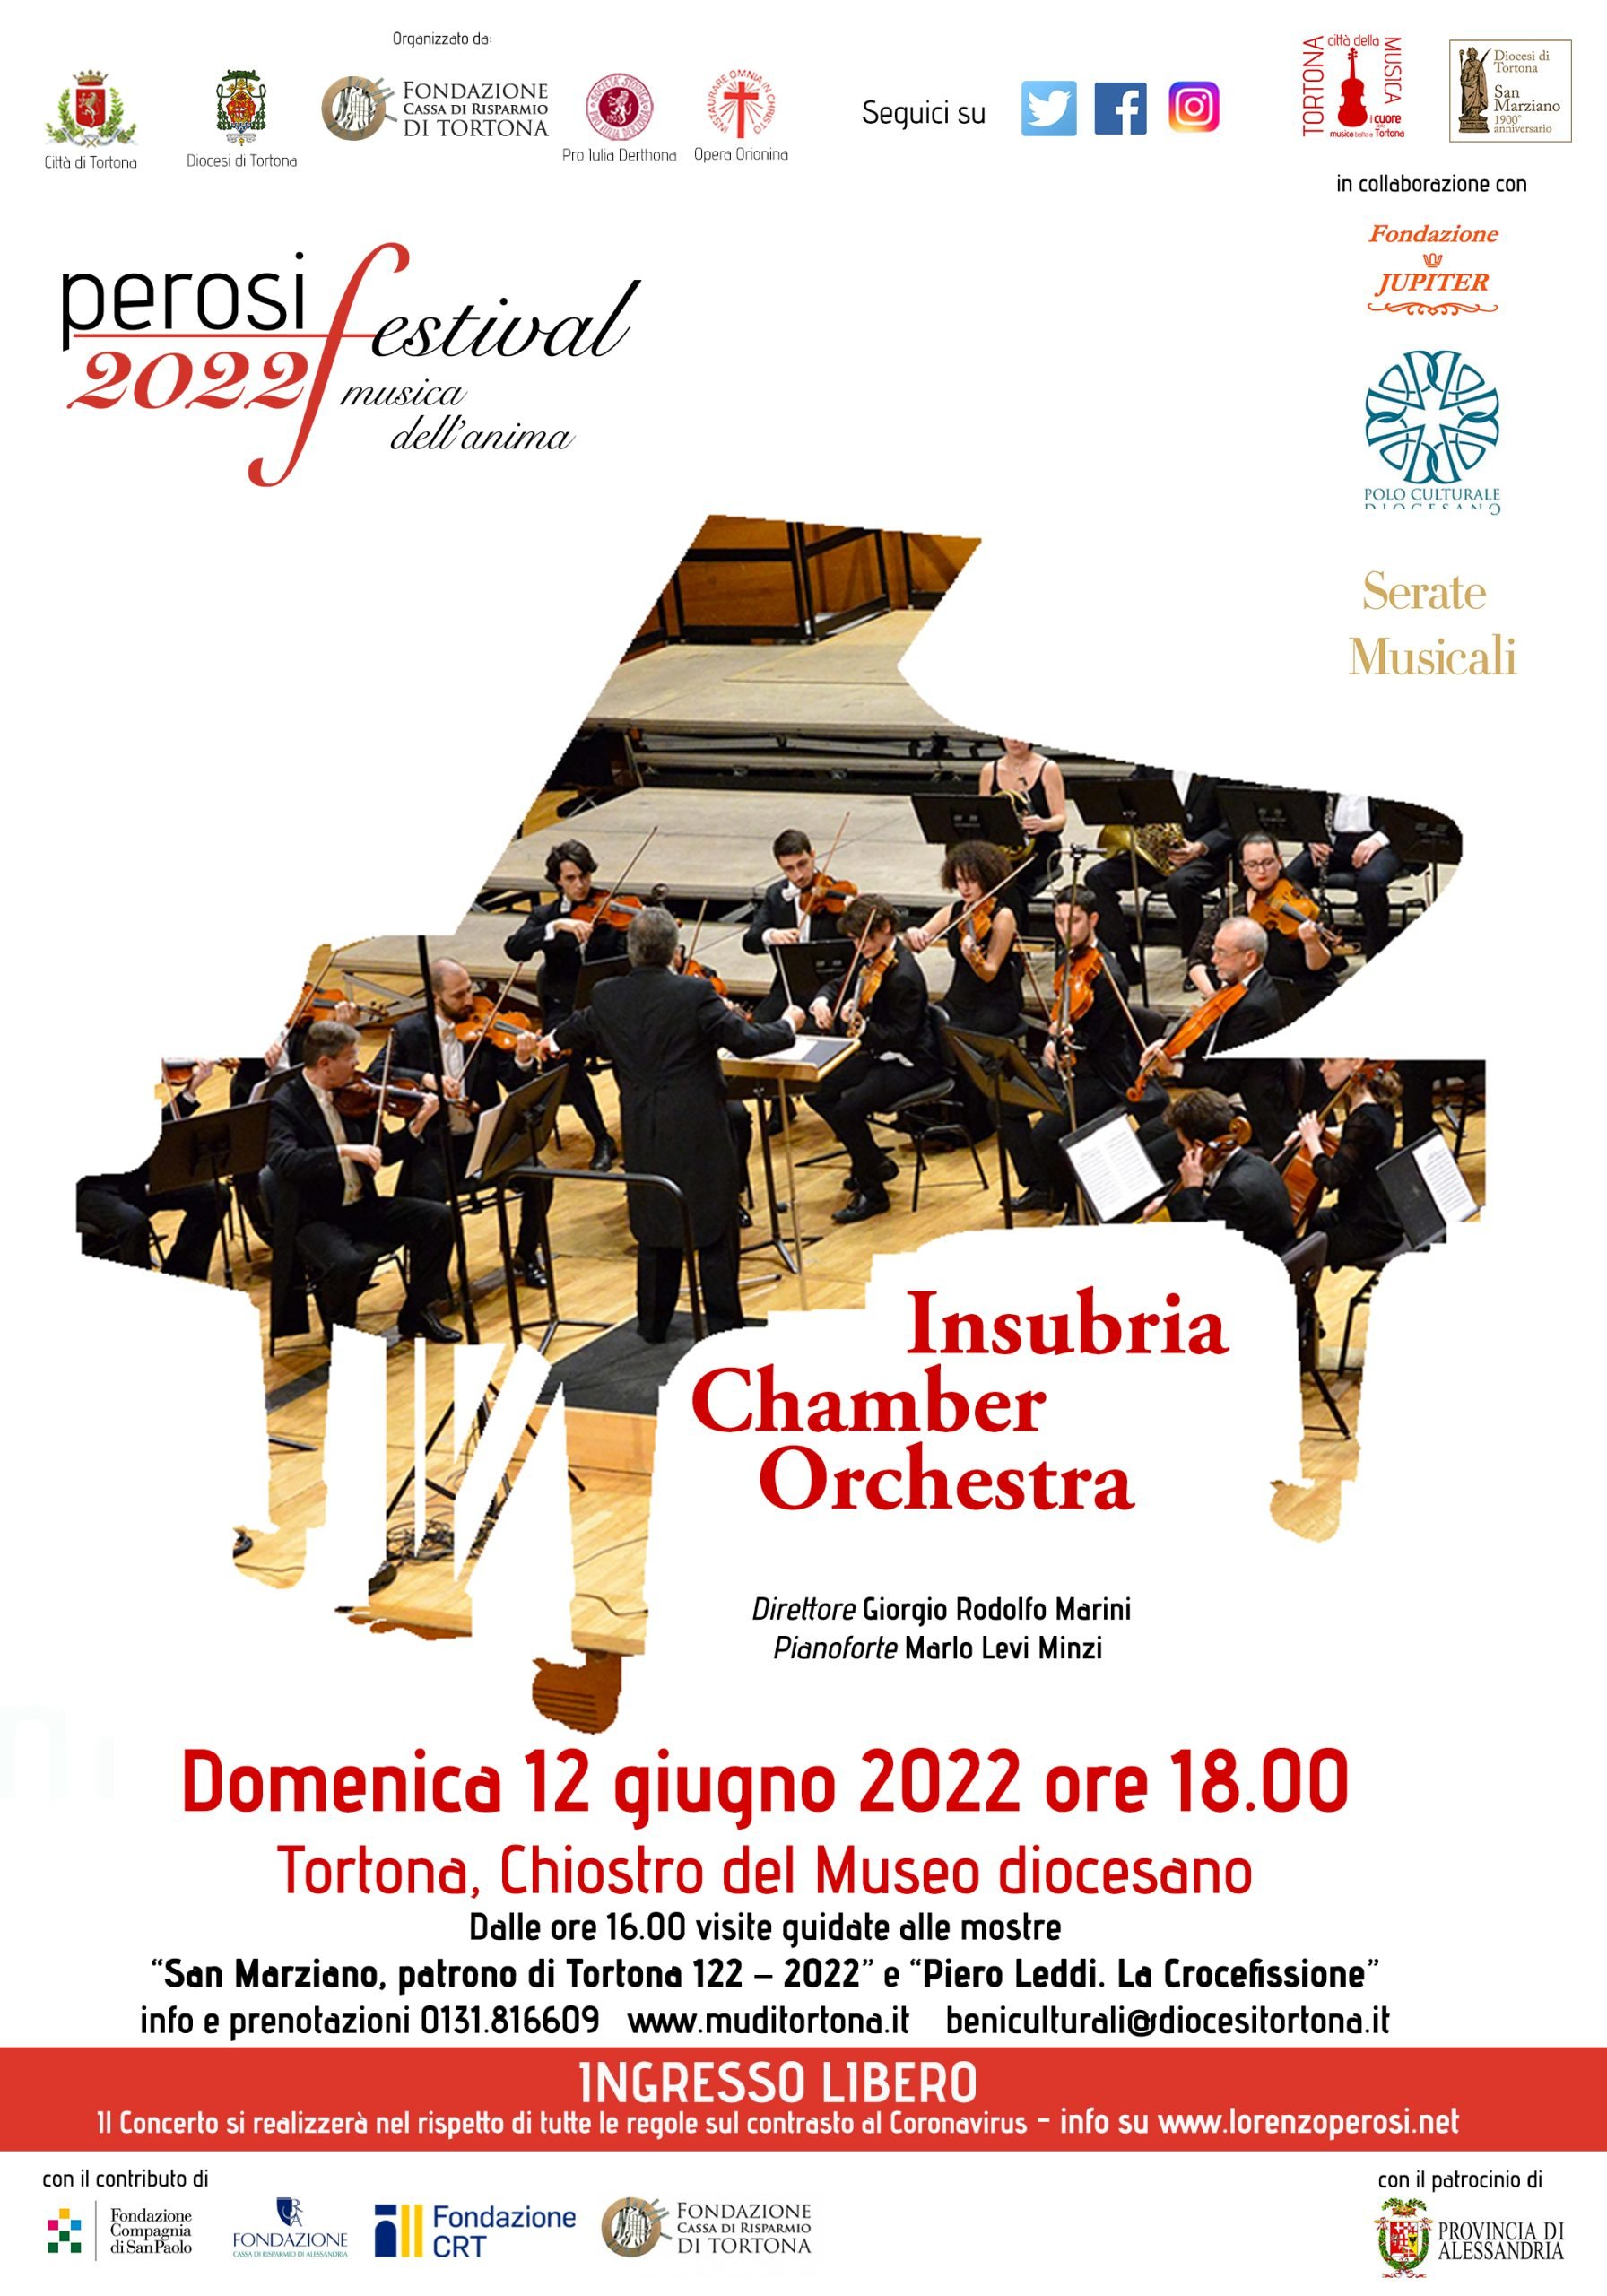 Domenica 12 giugno il concerto dell’Insubria Chamber Orchestra a Tortona